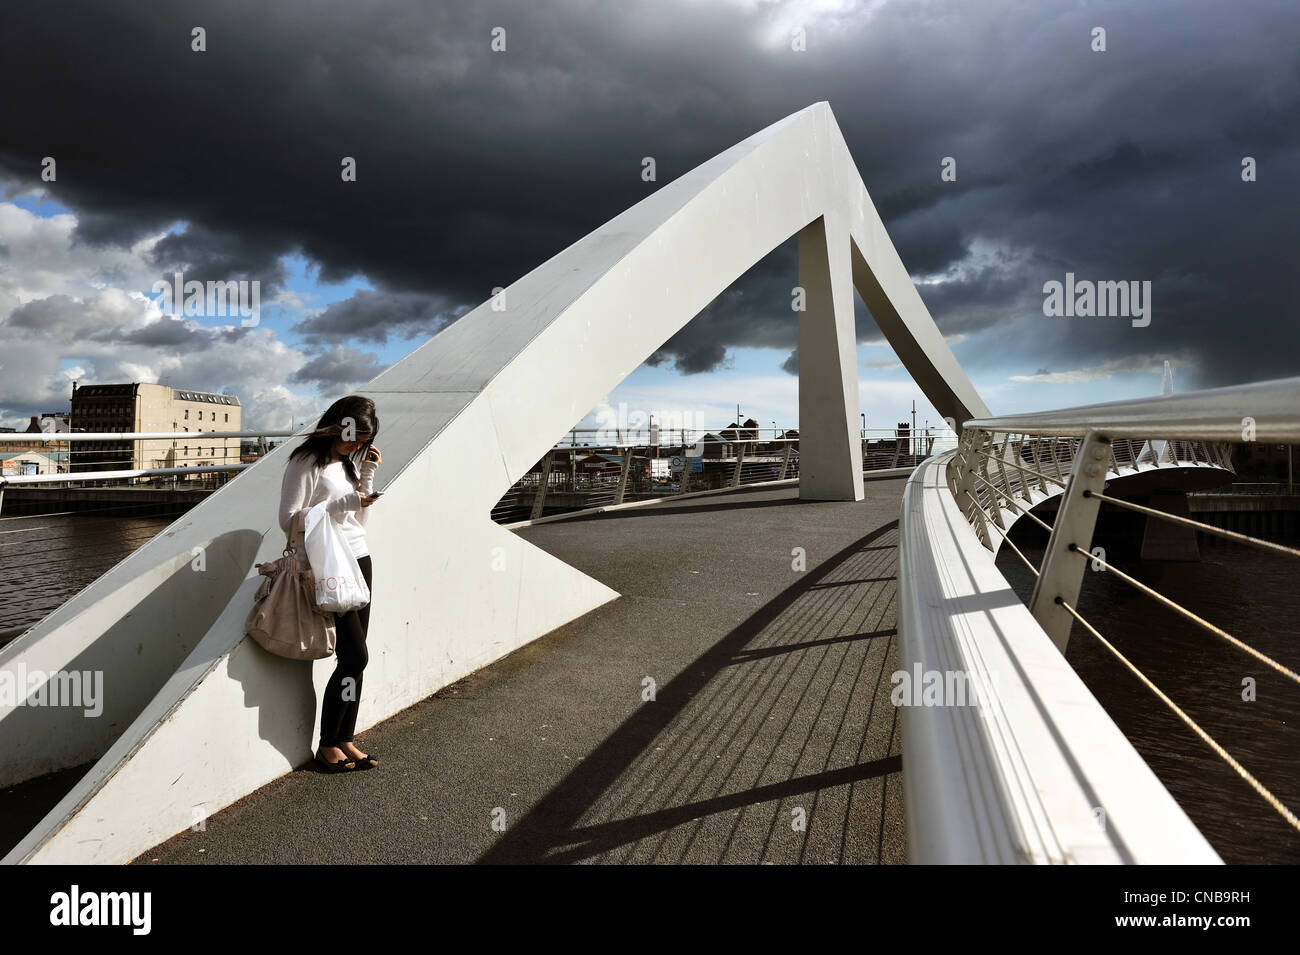 Une jeune fille se tient au soleil sur le pont (pont de Broomielaw-Tradeston ondulées) comme des nuages sombres se rassemblent dans le ciel de Glasgow. Banque D'Images